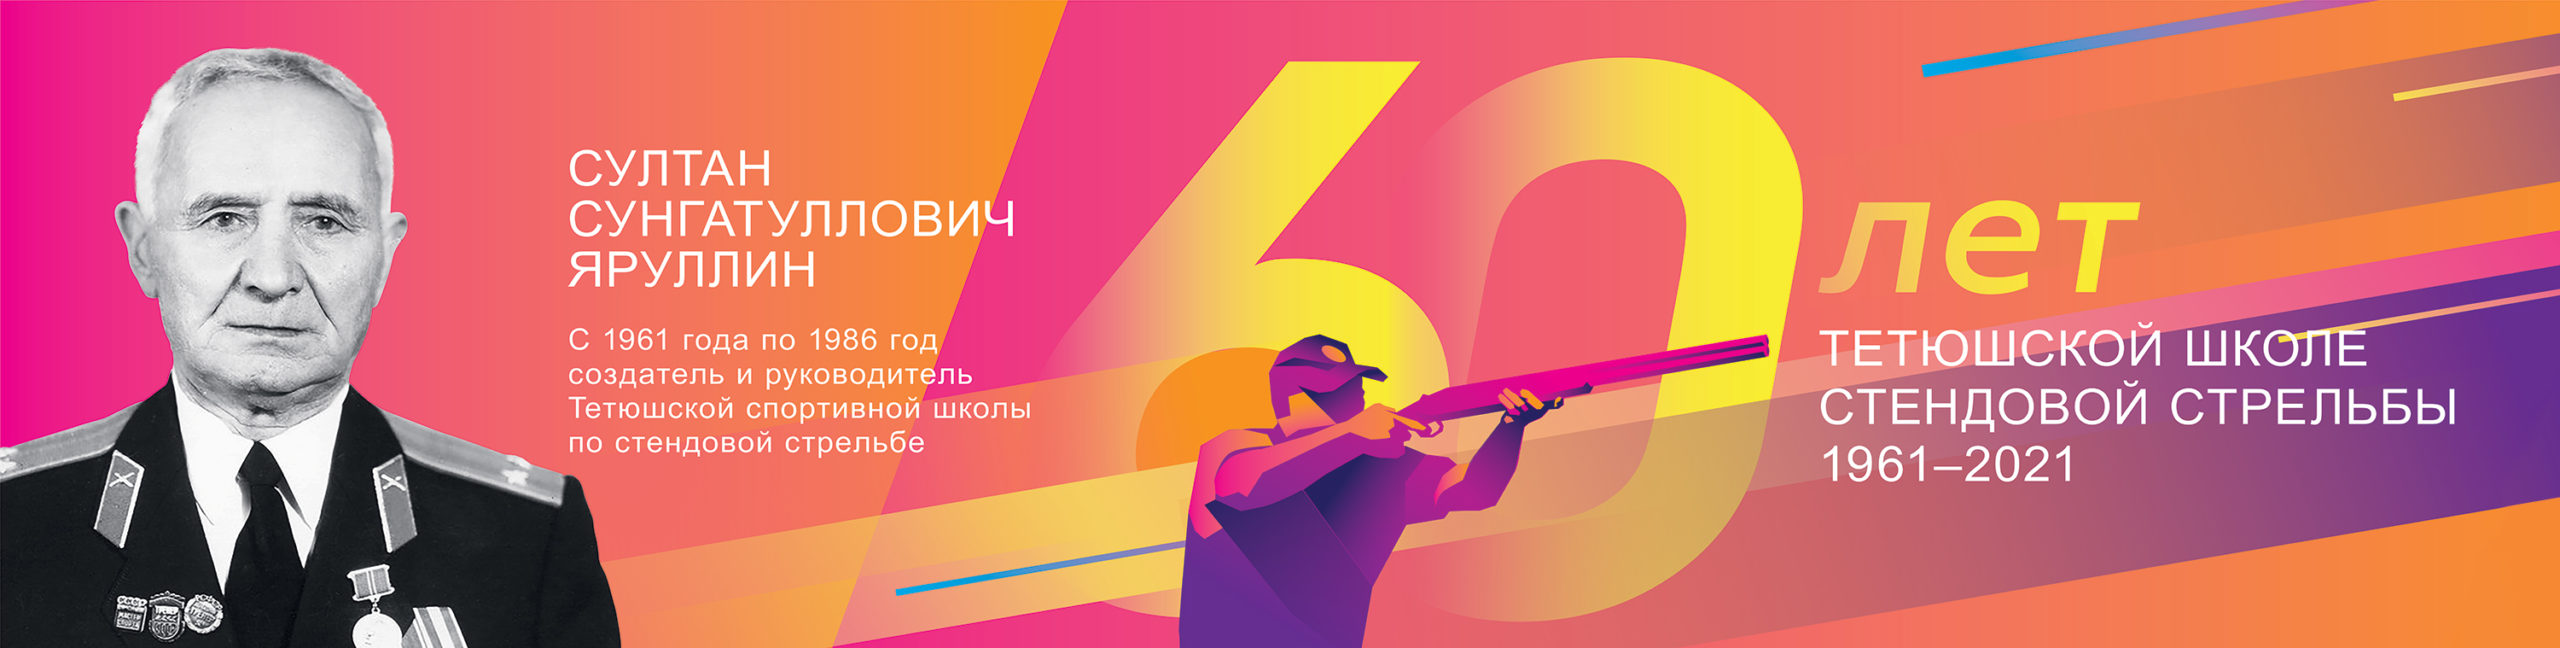 Пресс-релиз: 20 июня в Татарстане состоится празднование 60-ти летнего юбилея школы стендовой стрельбы